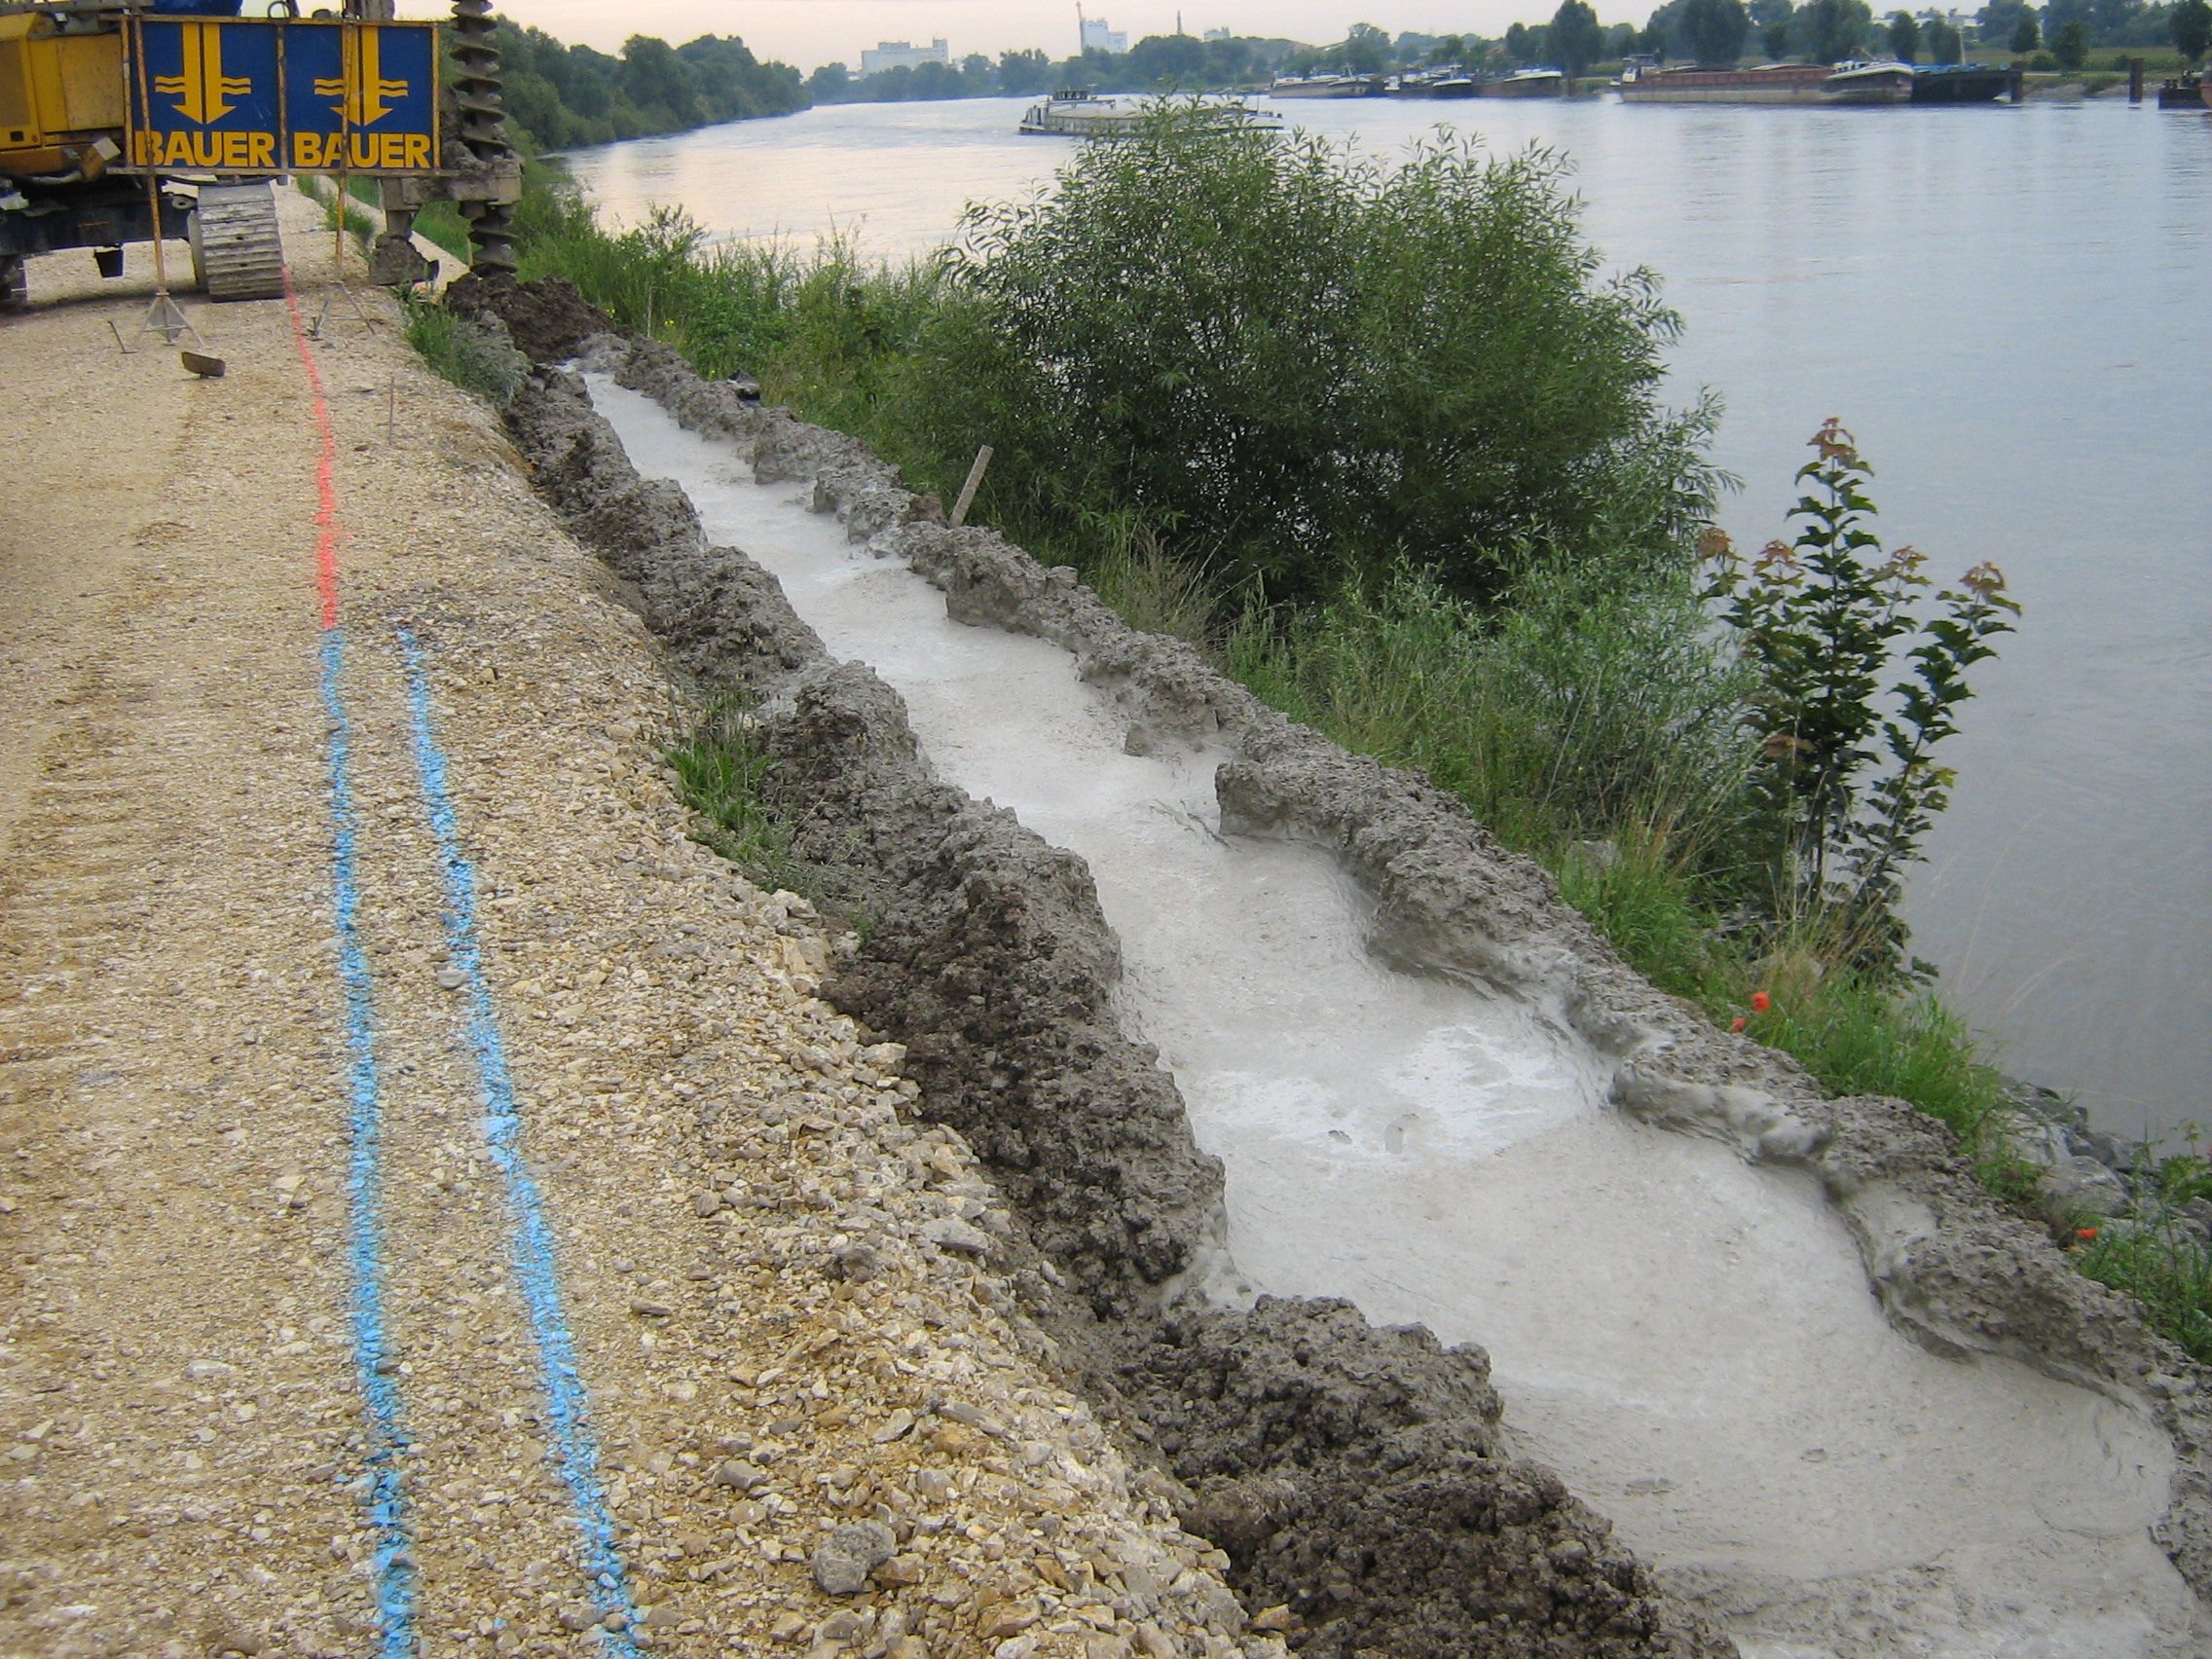 In der Mitte des Bildes wird die MIP Wand eingebracht. Bei diesem Verfahren, wird gebohrt und zugleich der Beton eingebracht. Im Hintergrund sieht man die Baumaschine mit dem Bohrer. Links davon das Gelände und rechts die Böschung, die Donau und einige Frachtschiffe.